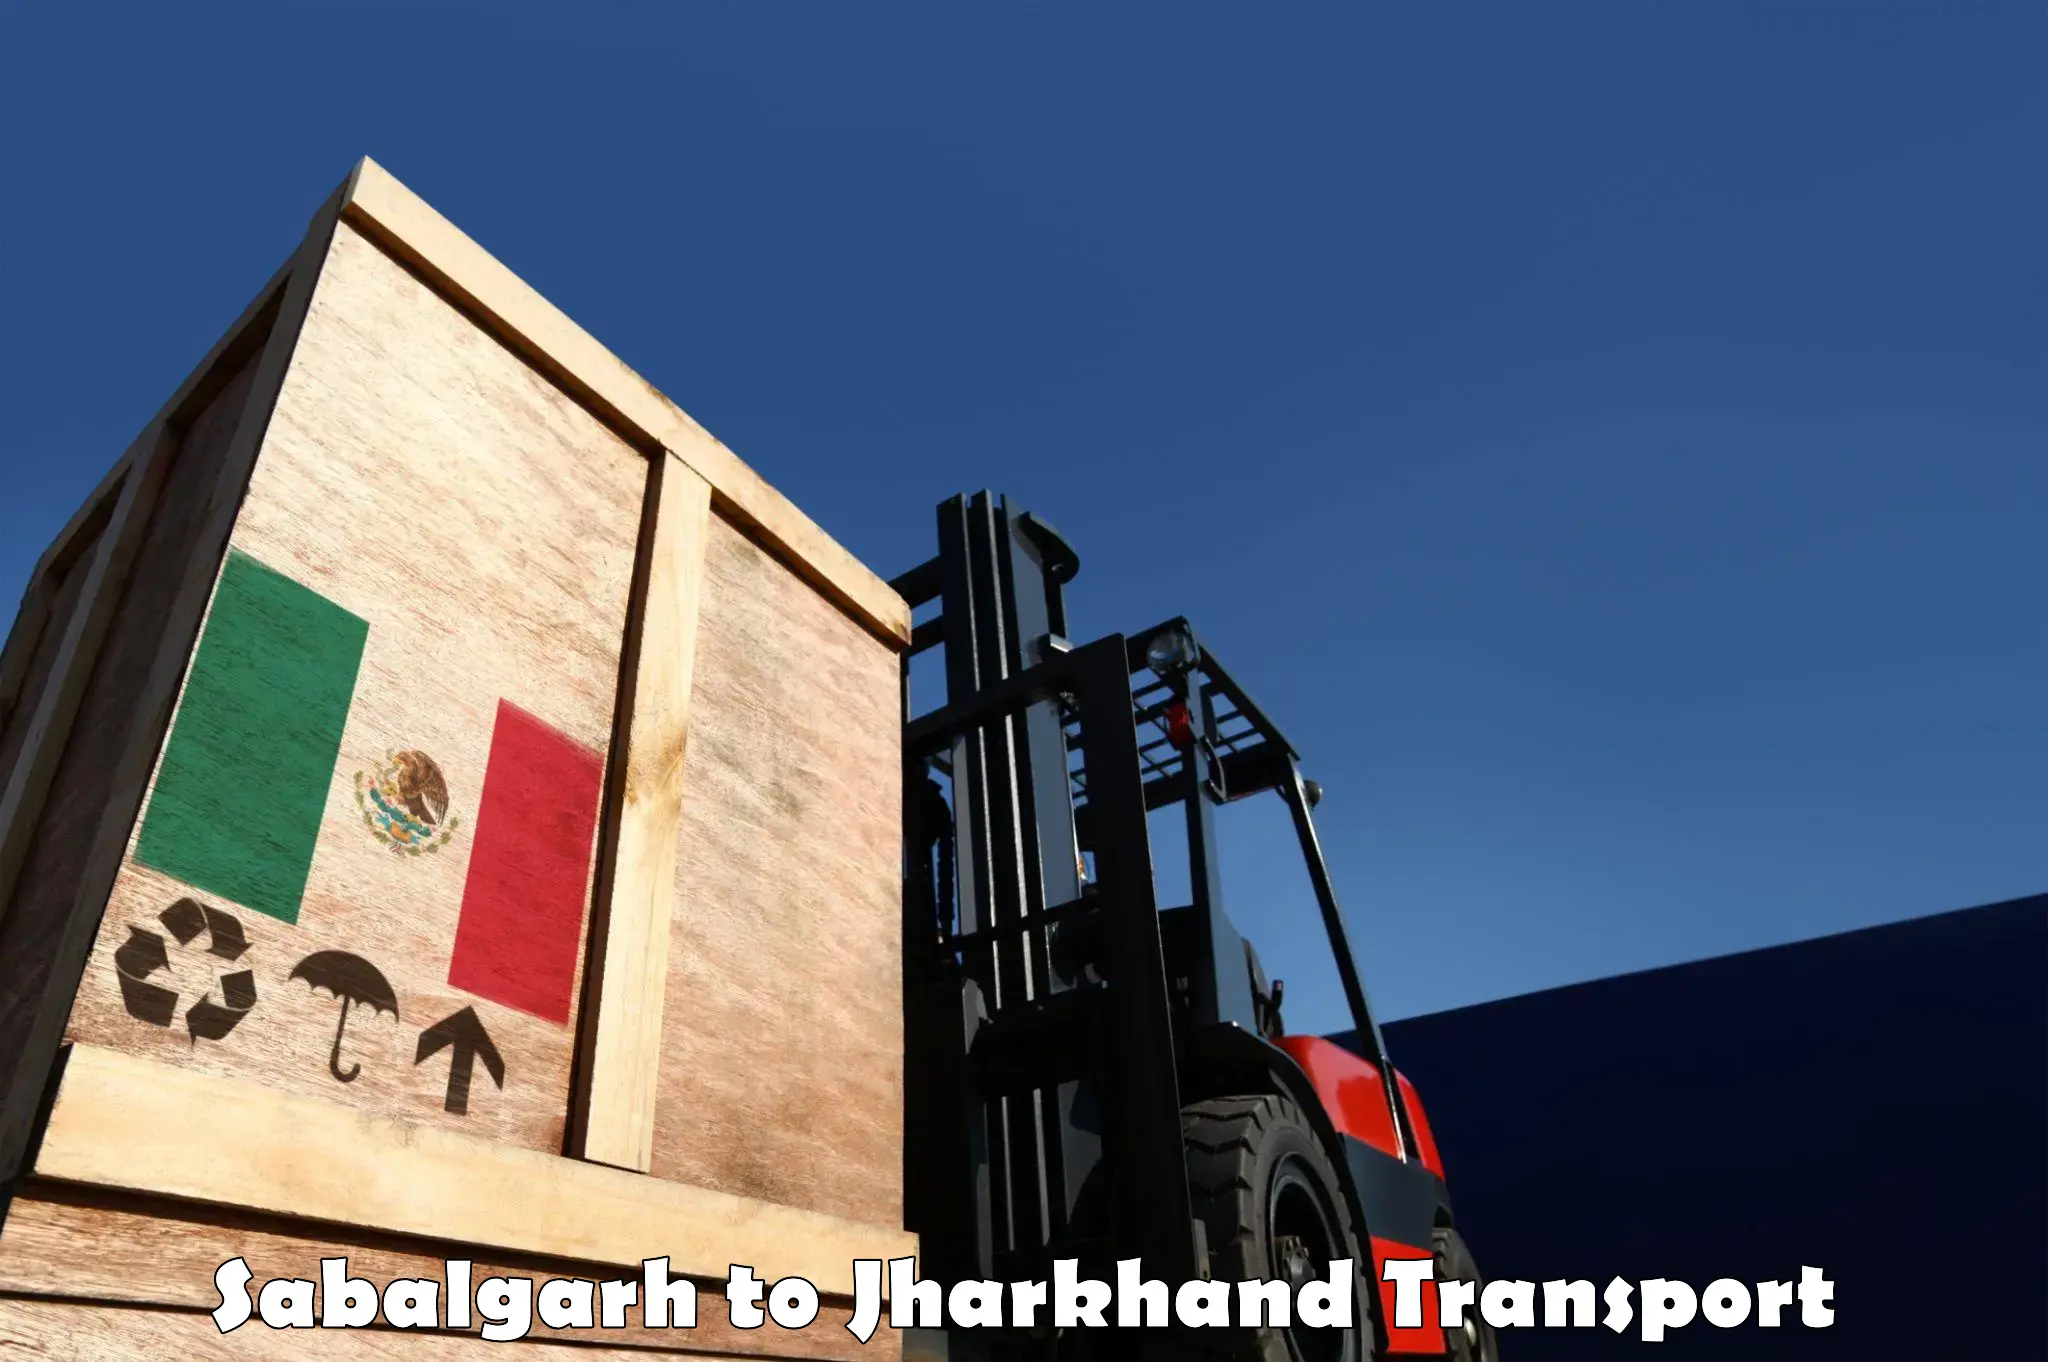 Furniture transport service Sabalgarh to Lohardaga